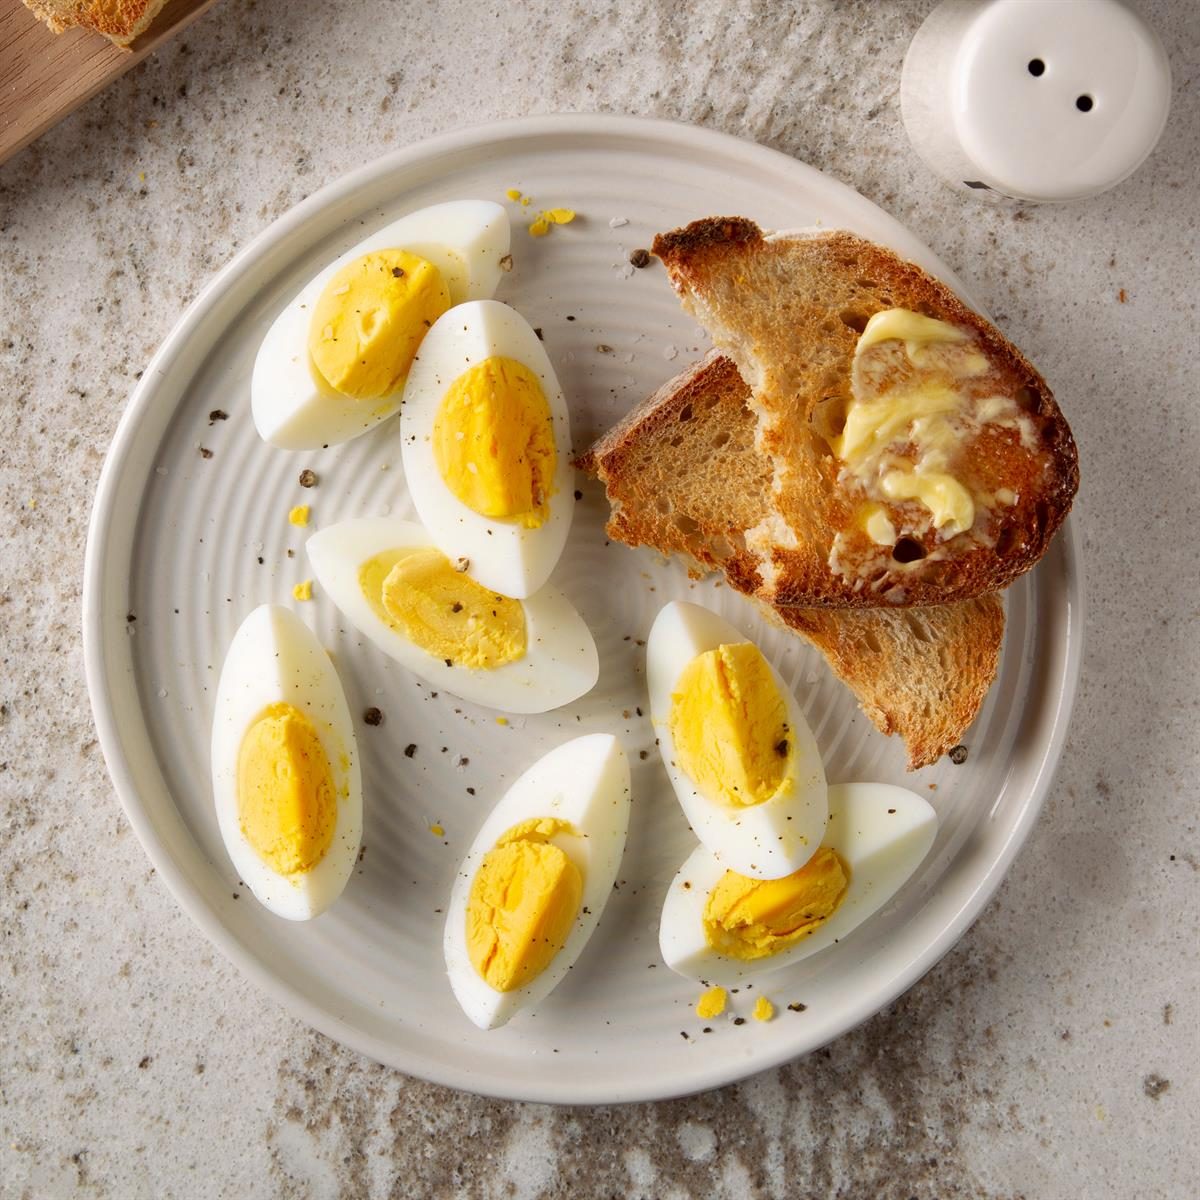 https://www.tasteofhome.com/wp-content/uploads/2018/01/Hard-Boiled-Eggs_EXPS_FT20_29222_F_0304_1.jpg